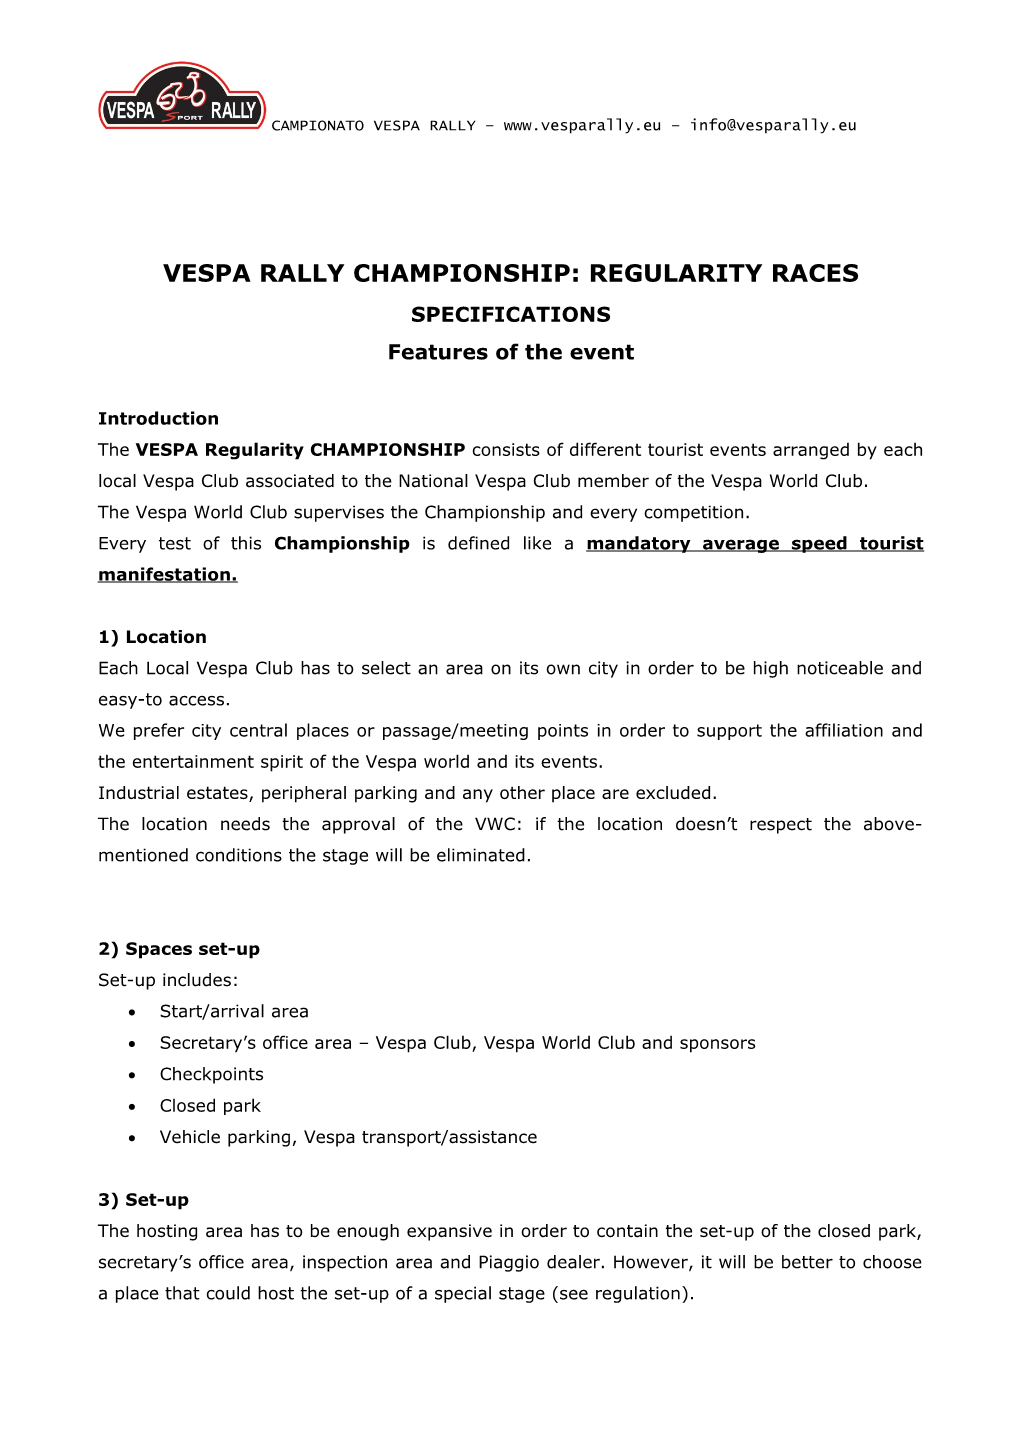 Campionato Regolarità Vespa Rally